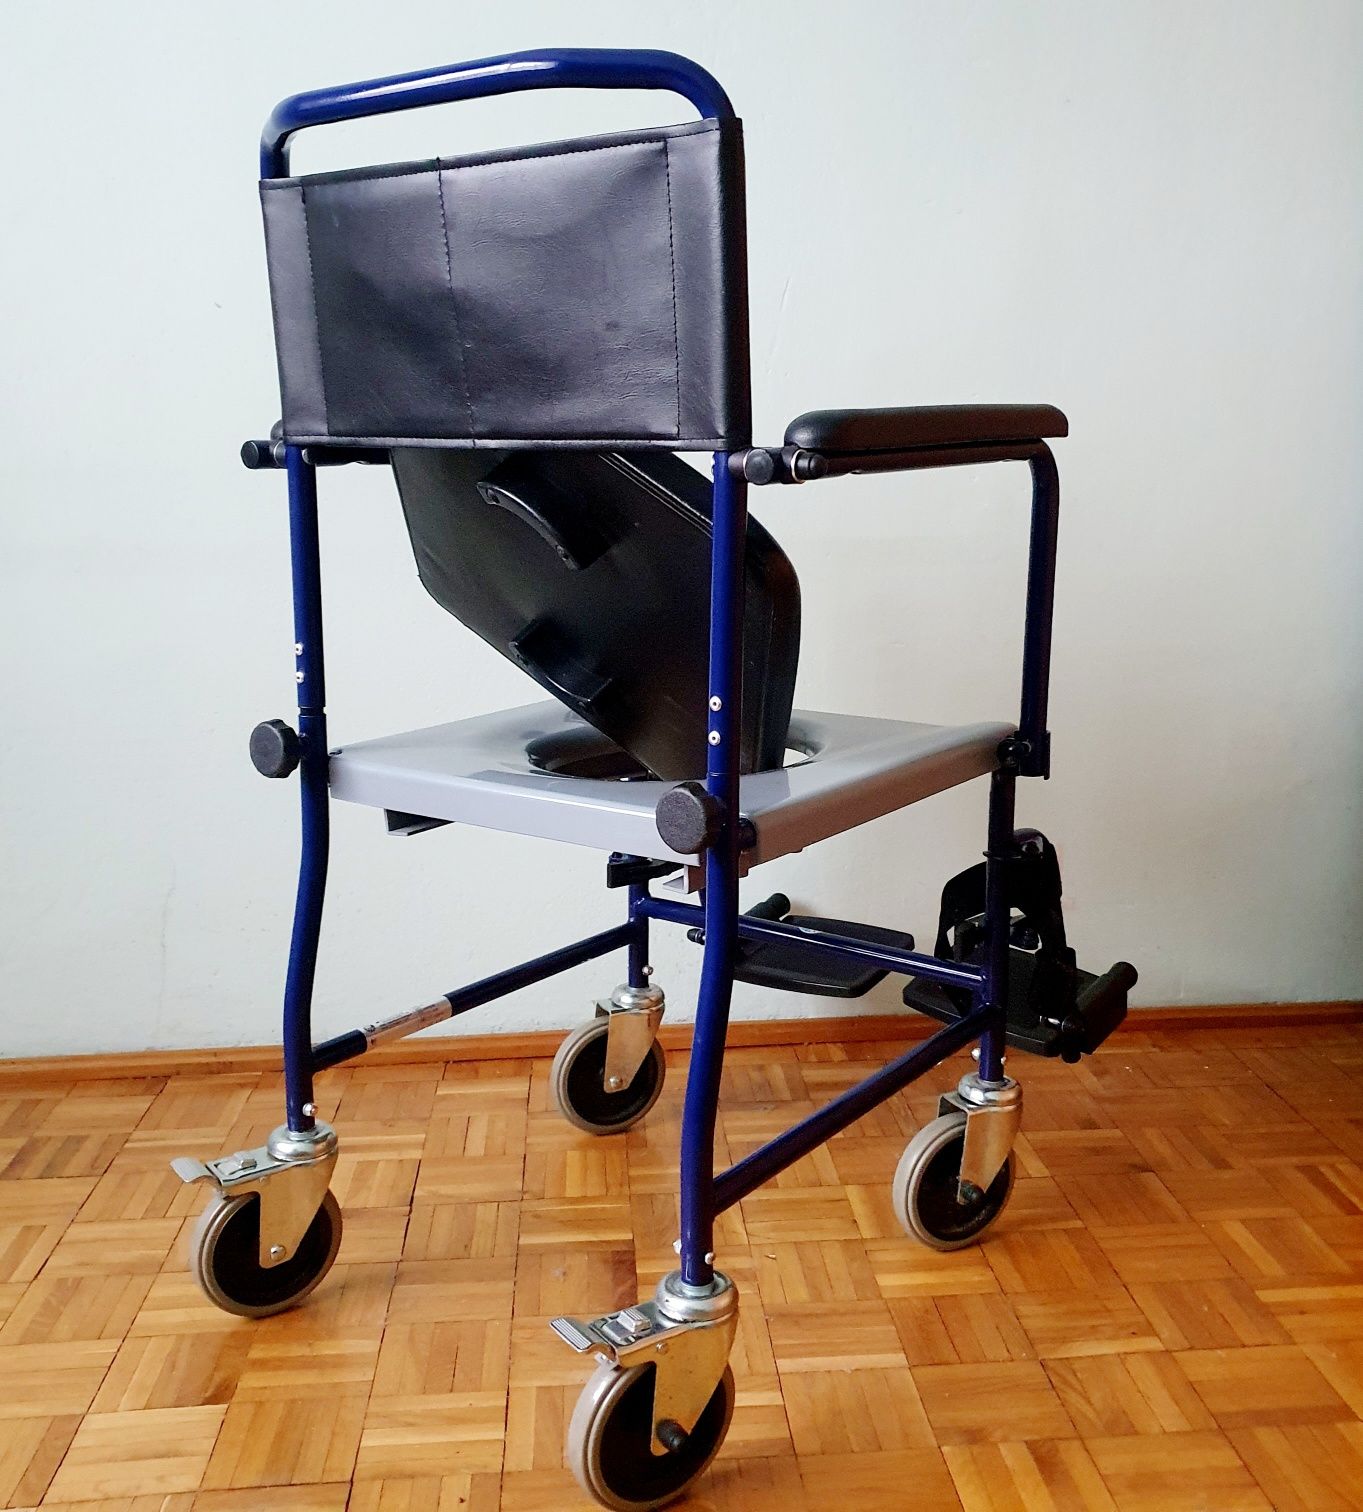 Vermeiren wózek inwalidzki  toaletowy transportowy